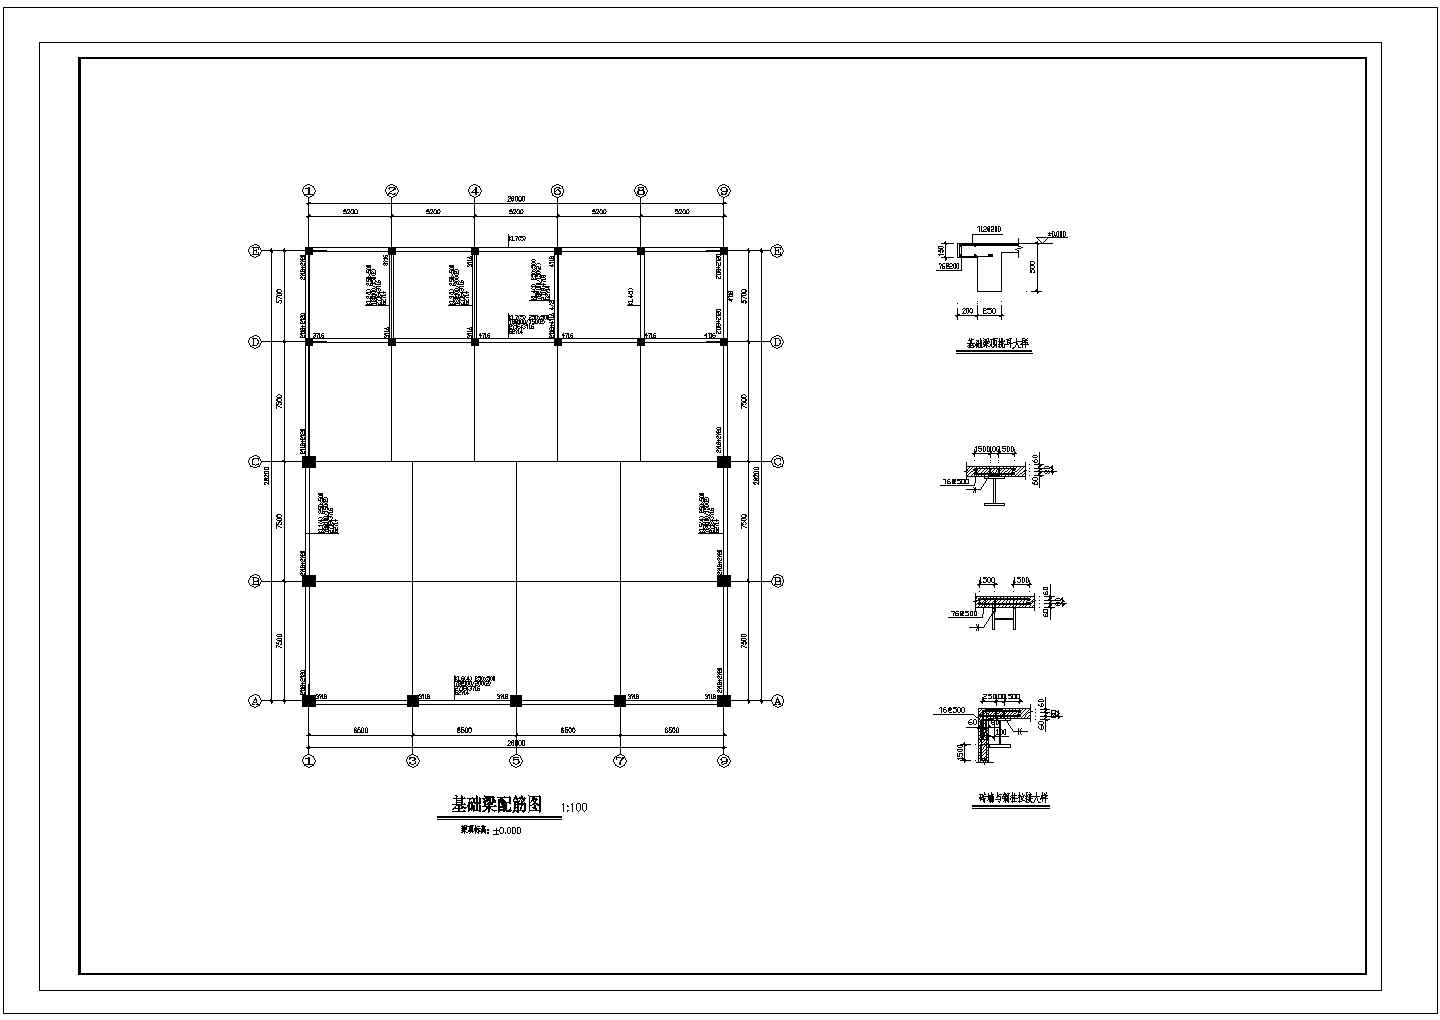 28.2x26m 钢结构厂房结构设计图，图纸包括基础平面布置图